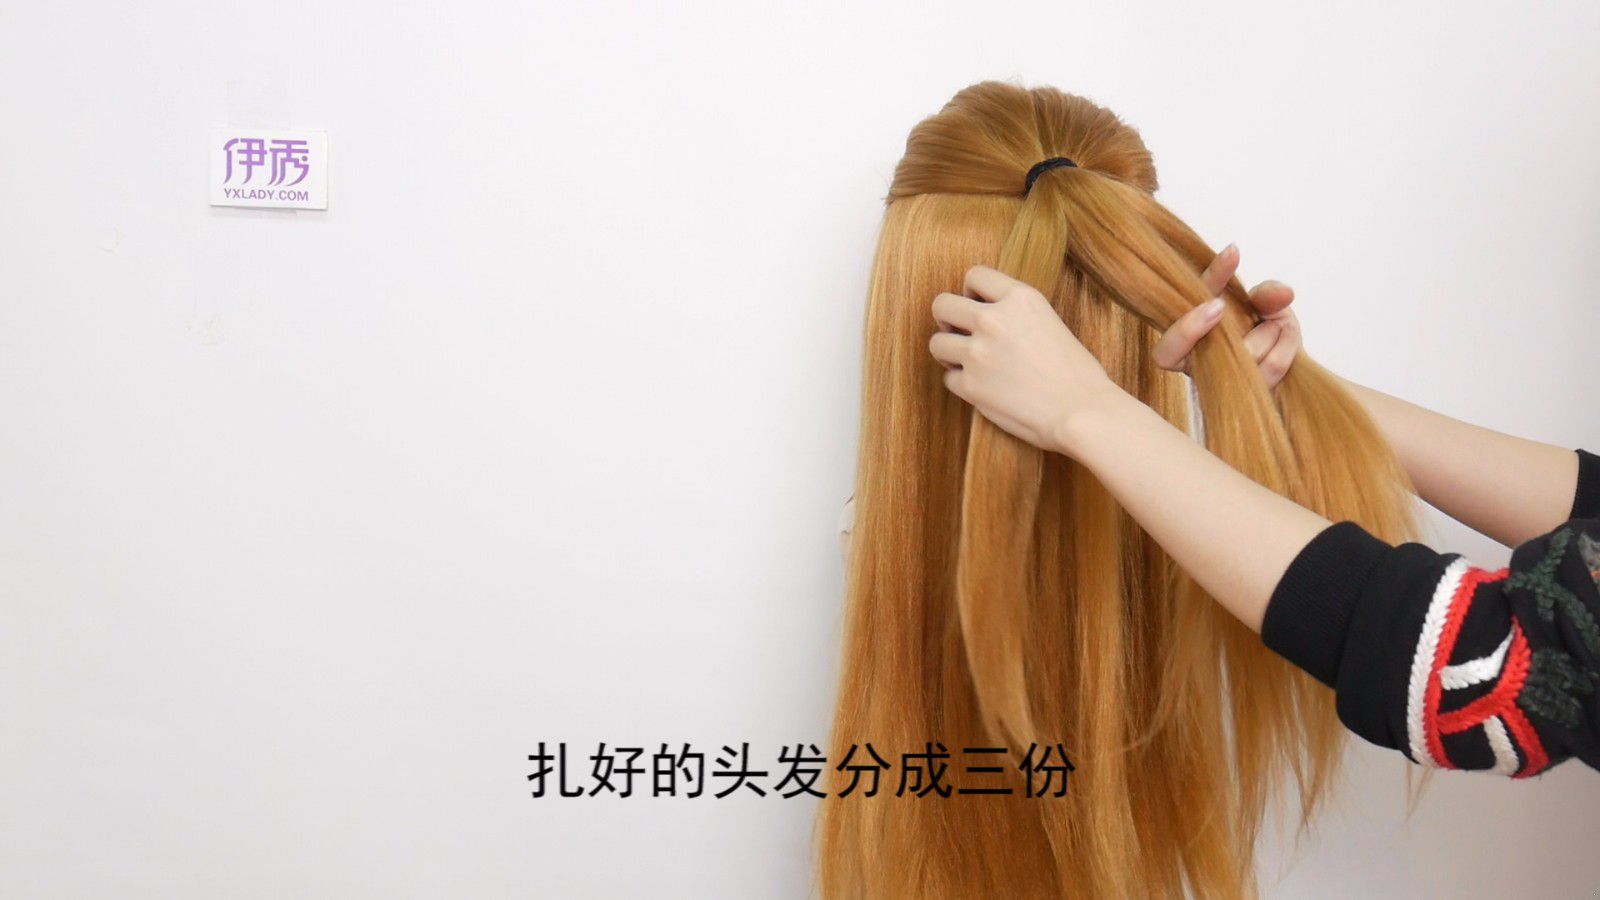 怎样扎头发简单好看 发型达人教你扎法教程_伊秀视频|yxlady.com